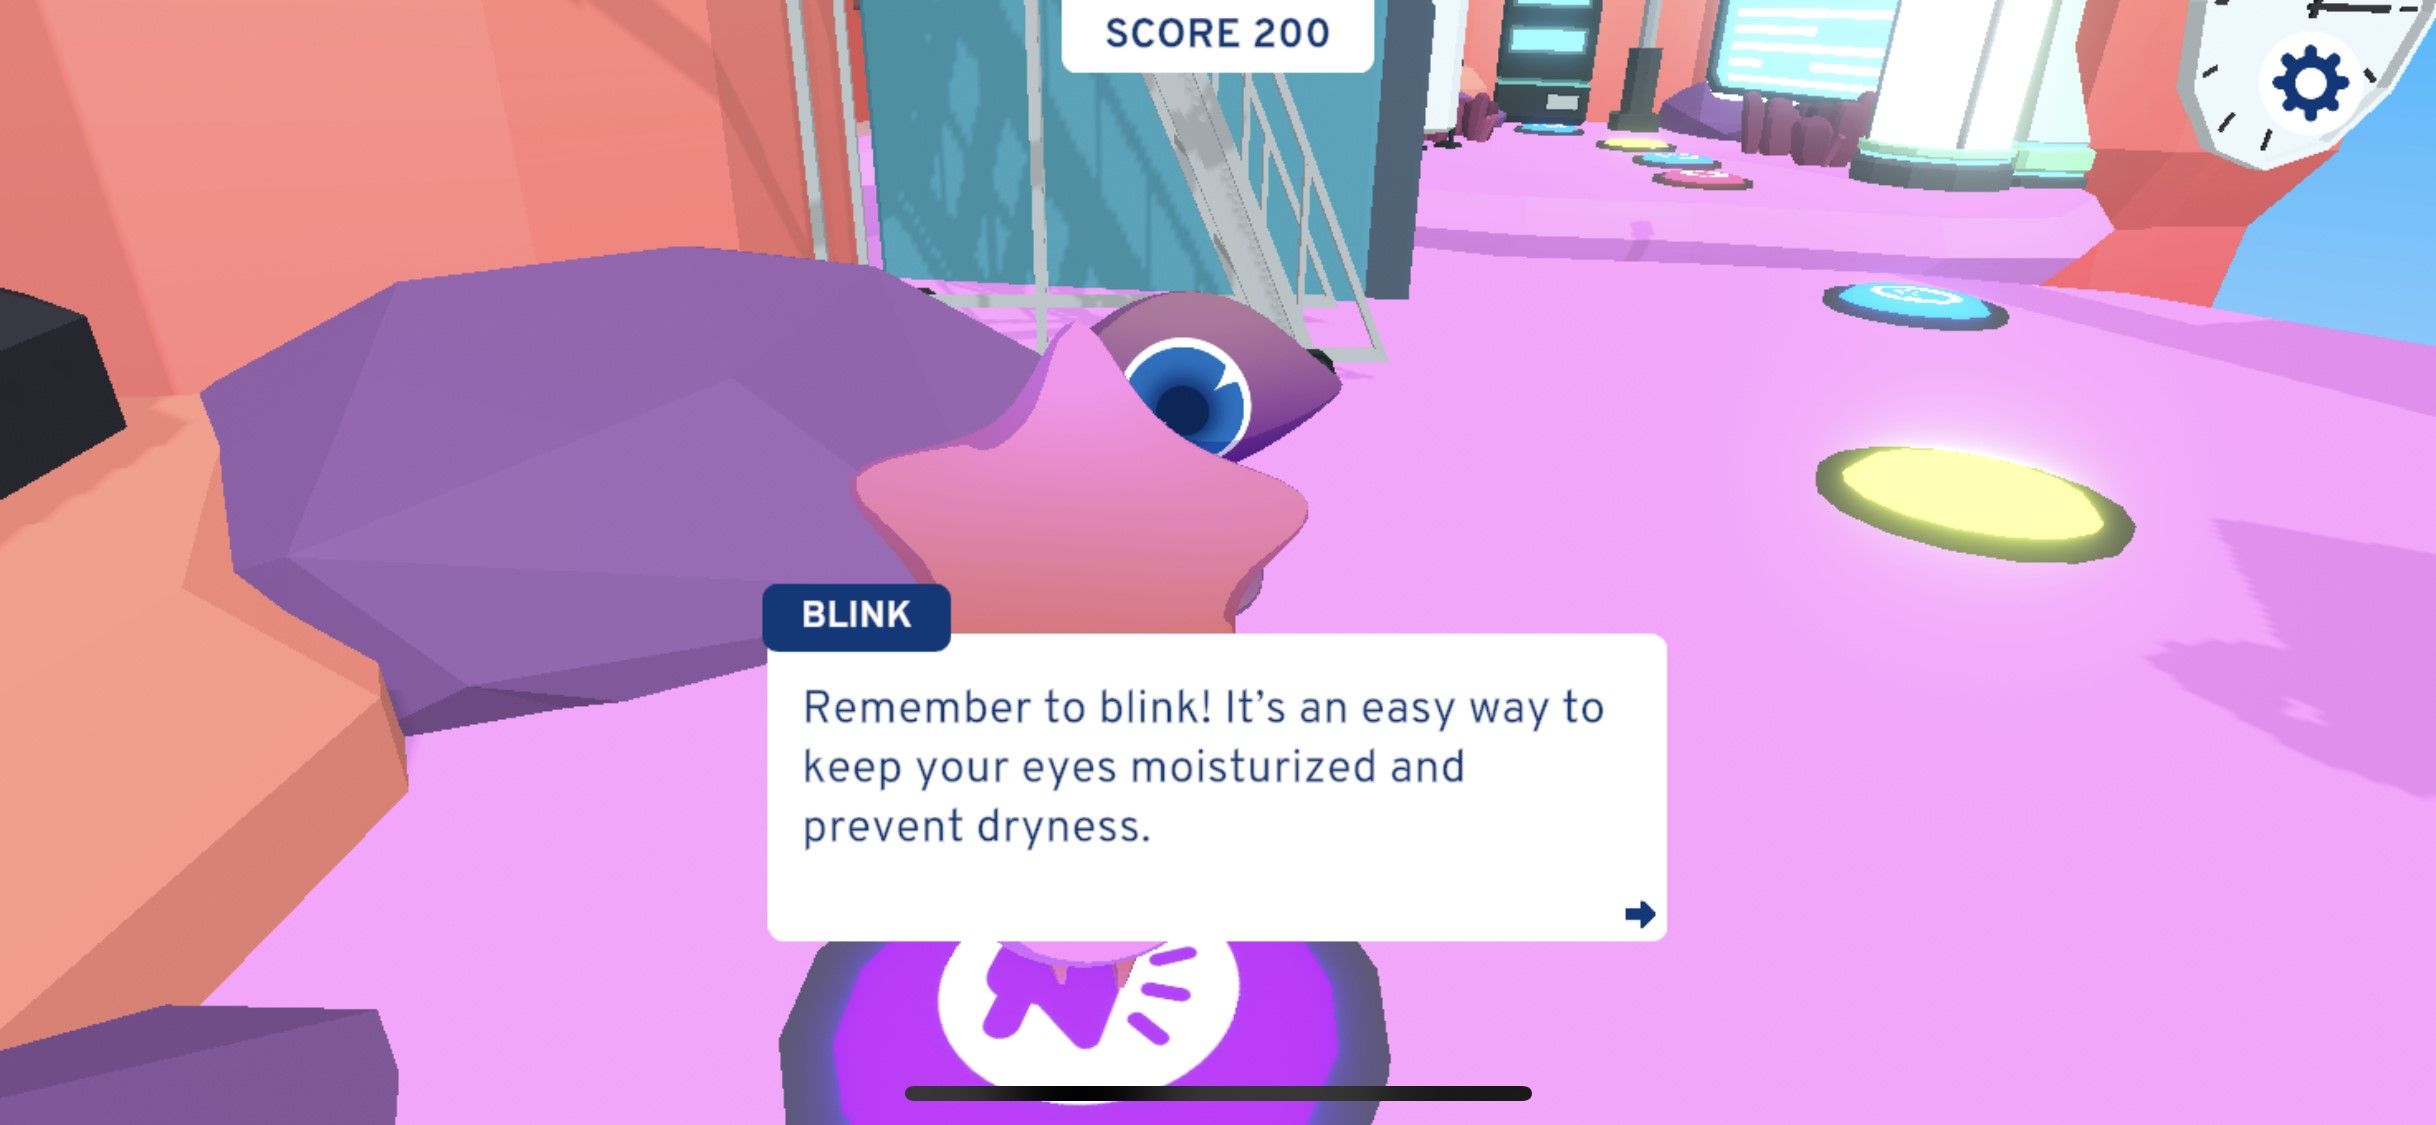 Lembrete do jogo Blink Land para piscar